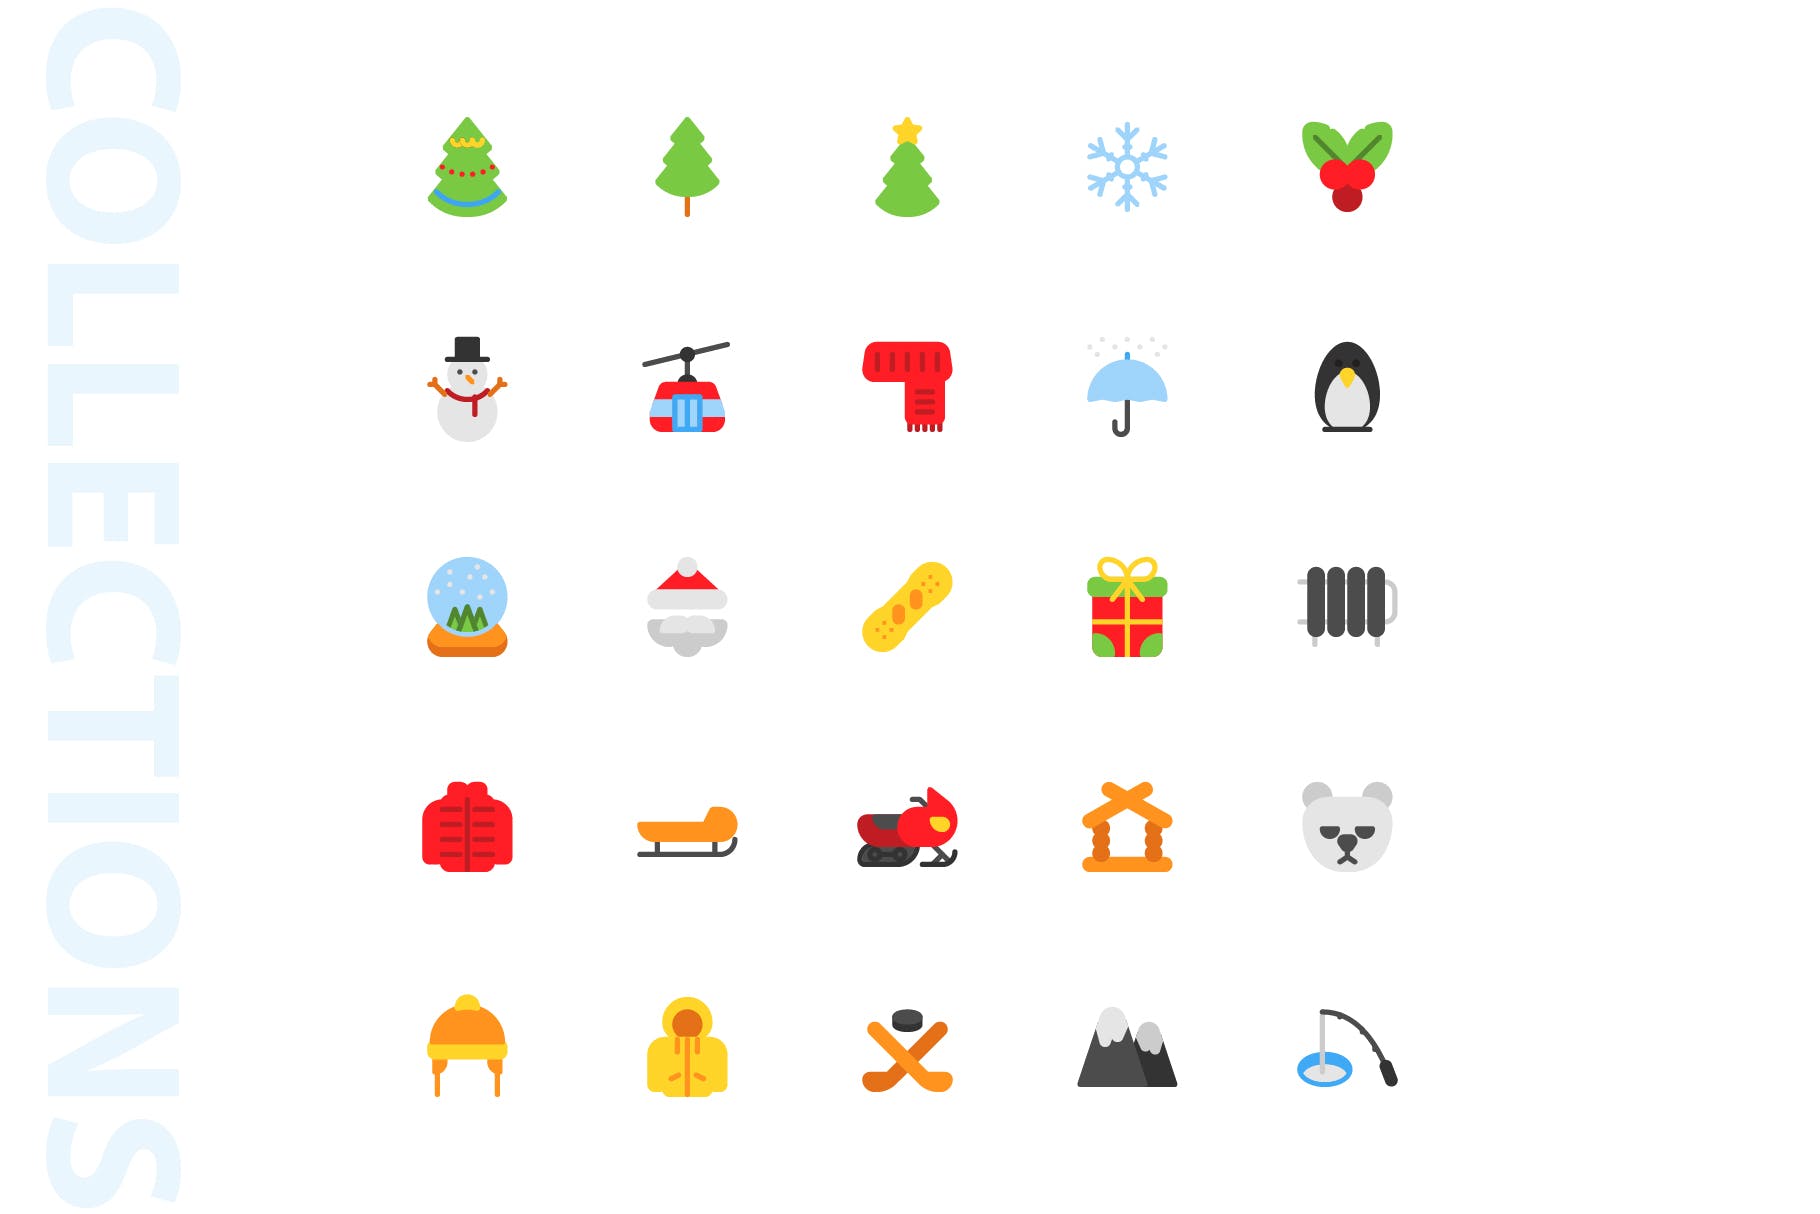 25枚冬天主题扁平设计风格矢量素材库精选图标v1 Winter Flat Icons插图(3)